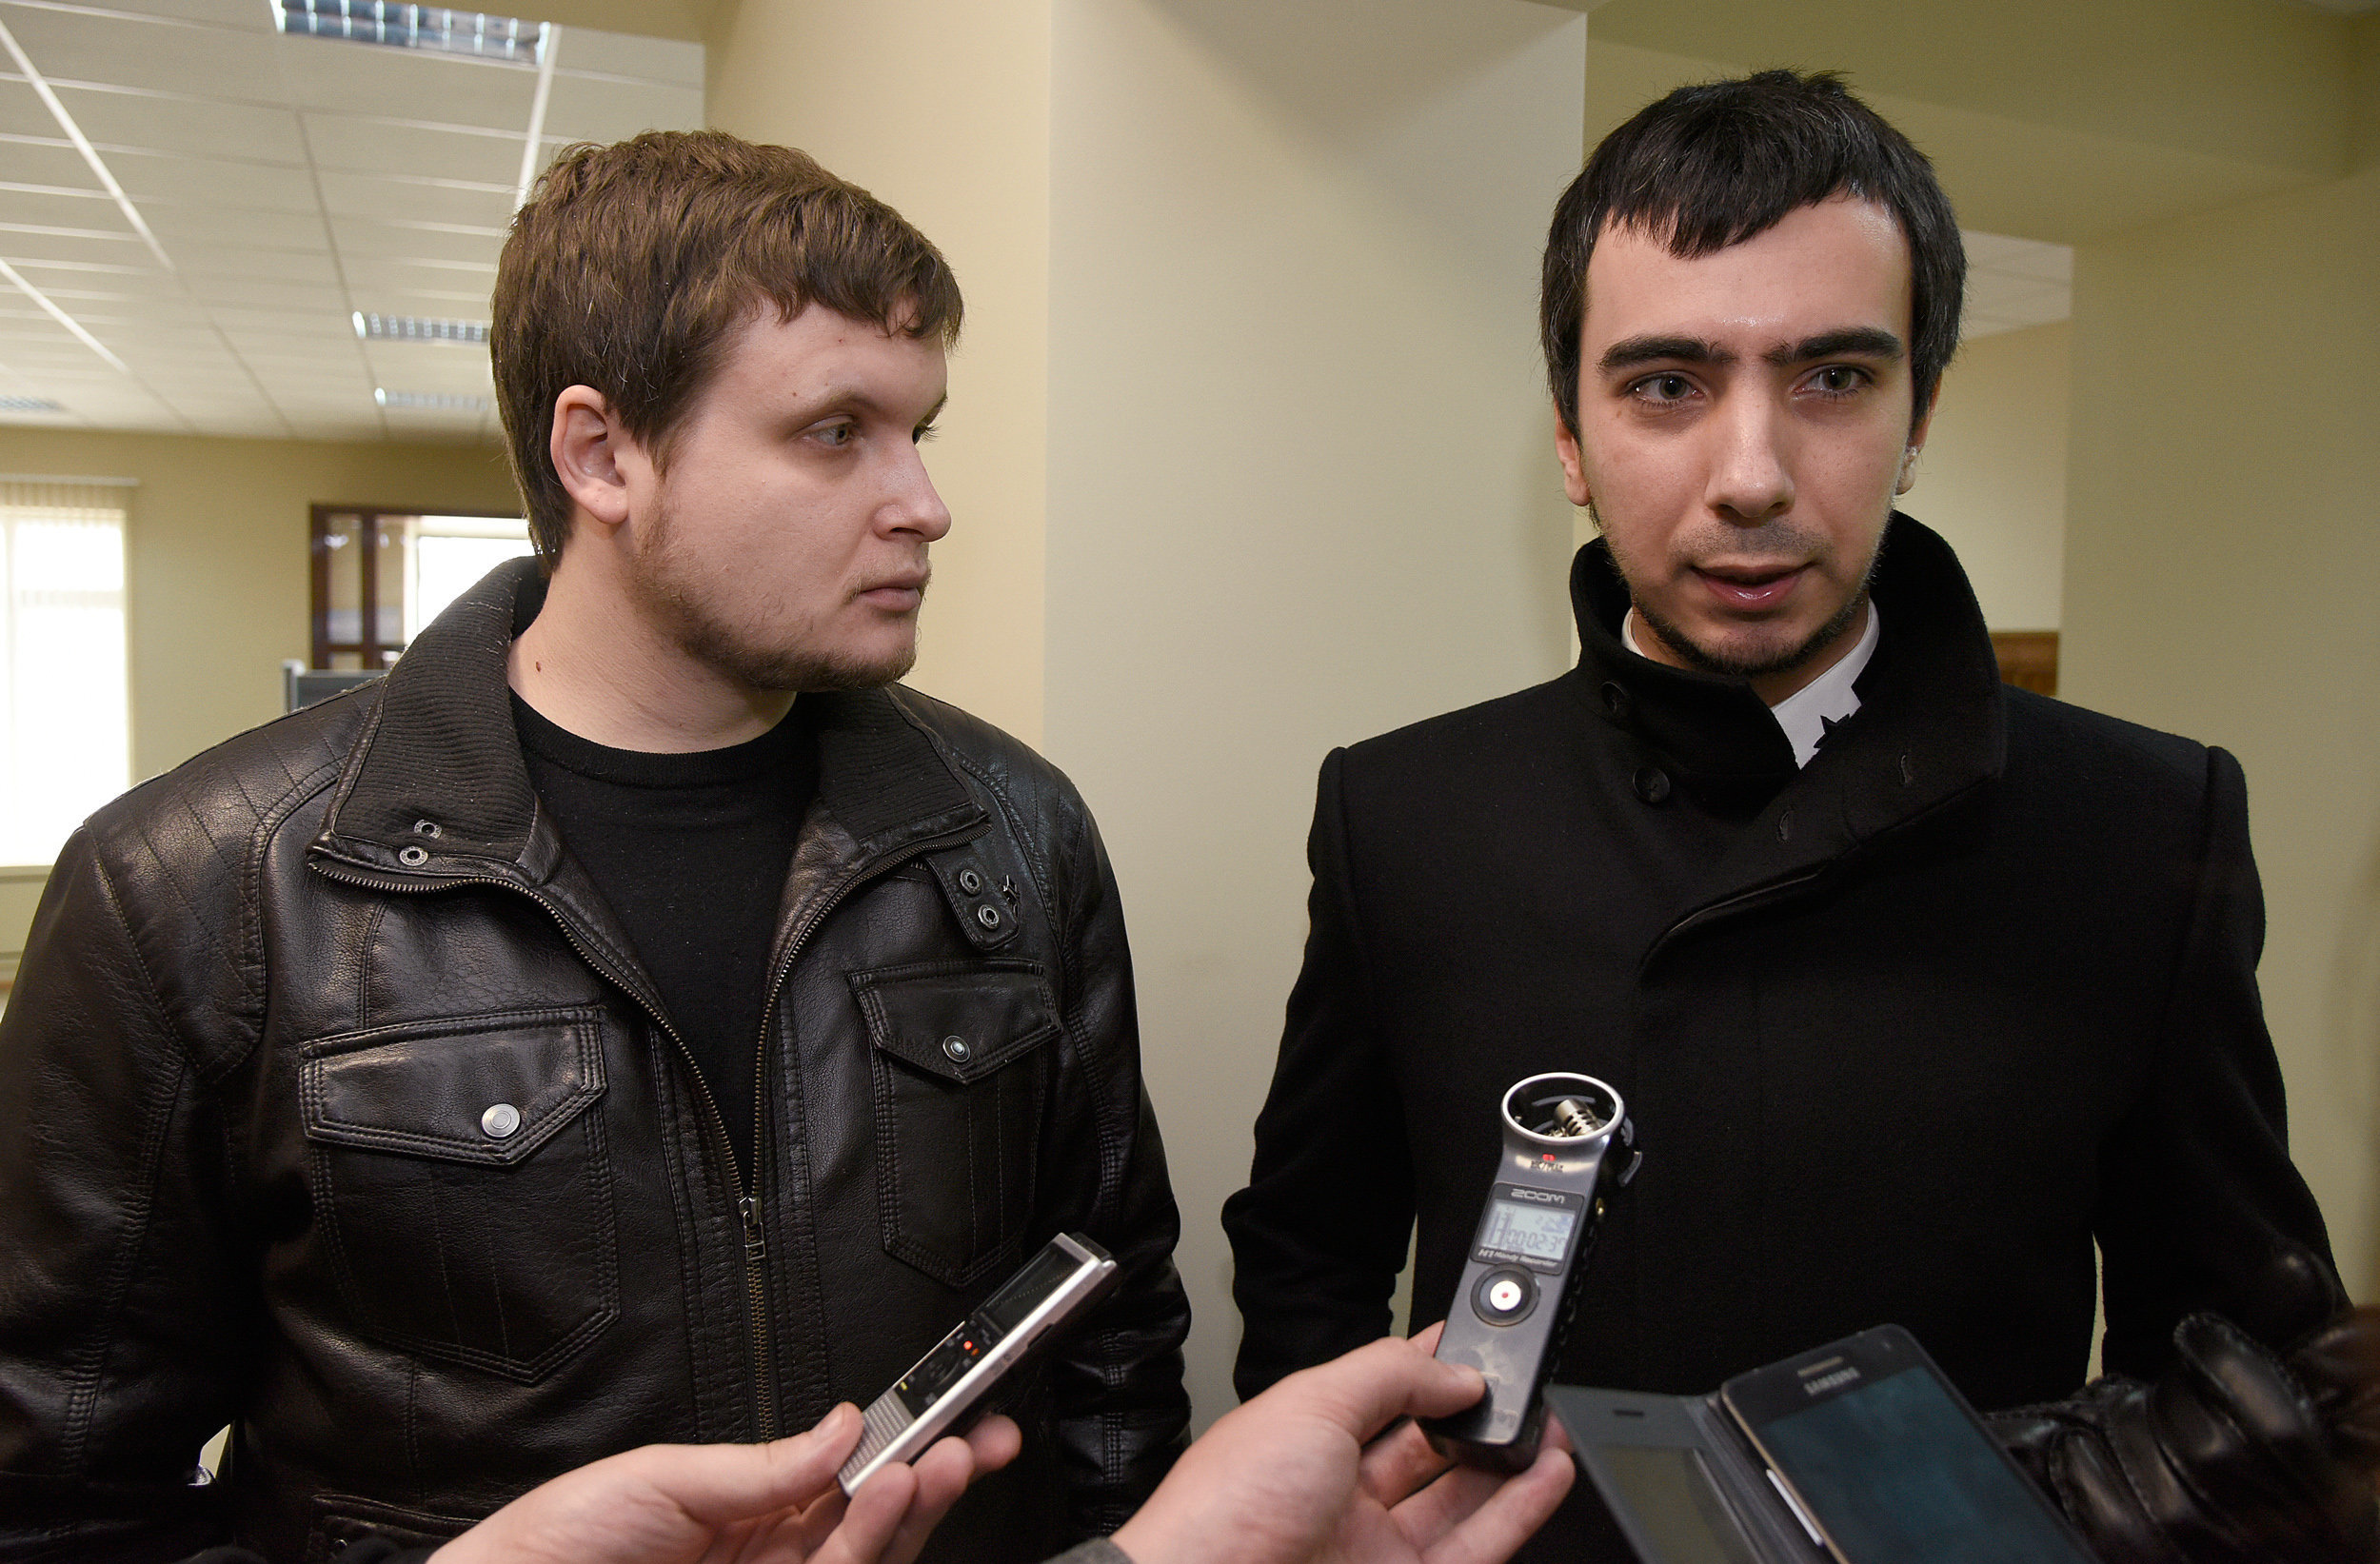 Слева направо: пранкеры Лексус (Алексей Столяров) и Вован (Владимир Кузнецов).